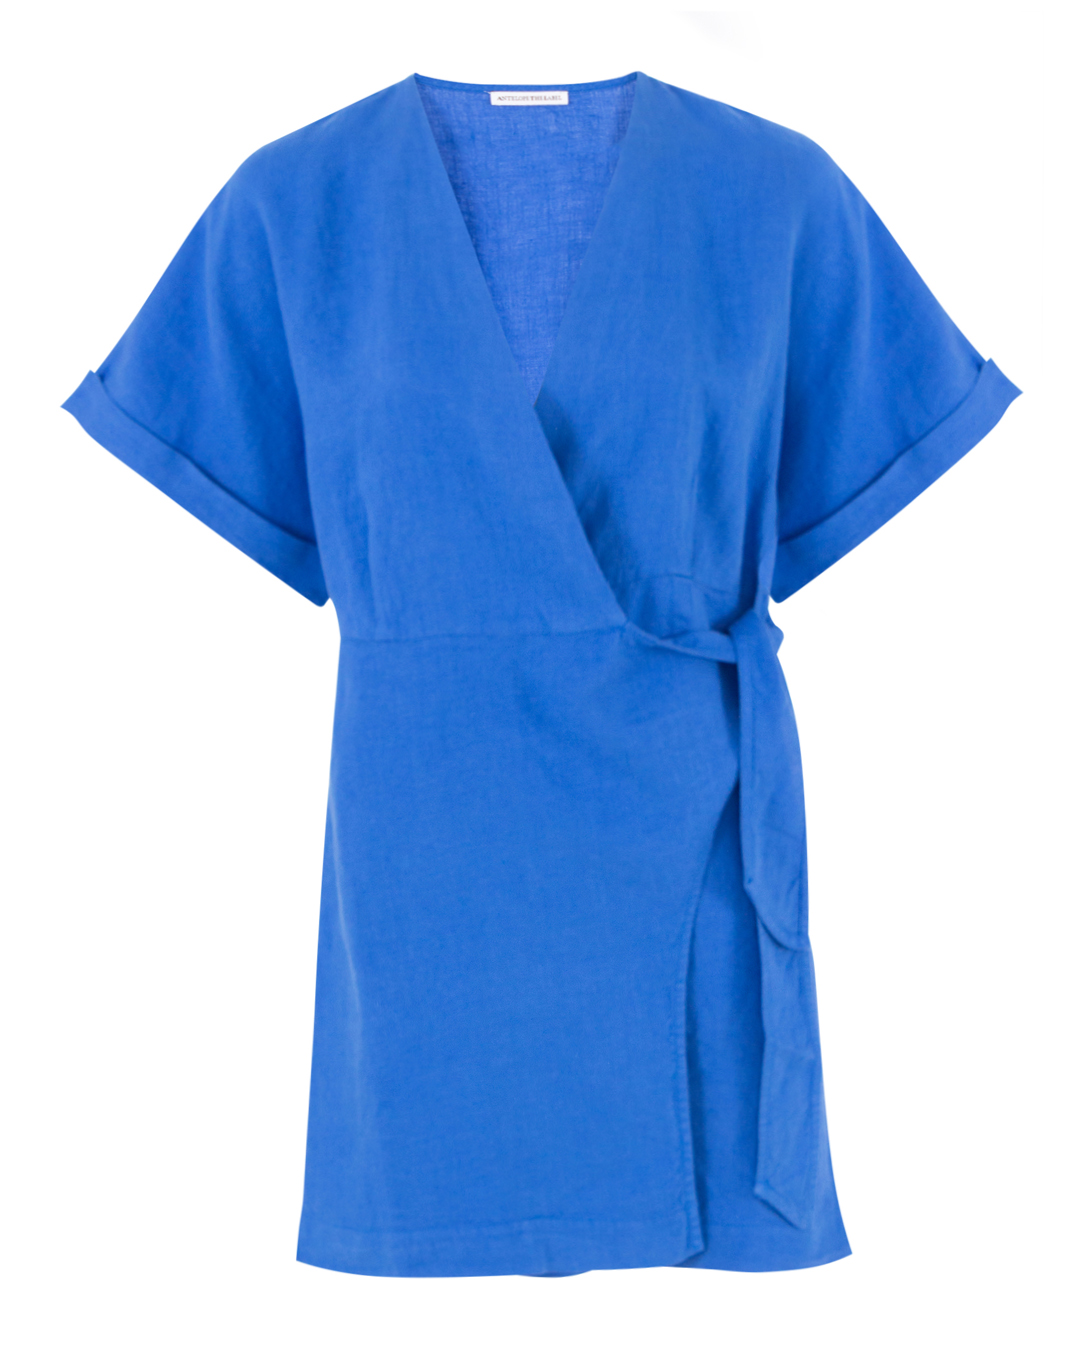 платье ANTELOPE THE LABEL D1.TURCHESE синий m/l, размер m/l D1.TURCHESE синий m/l - фото 1